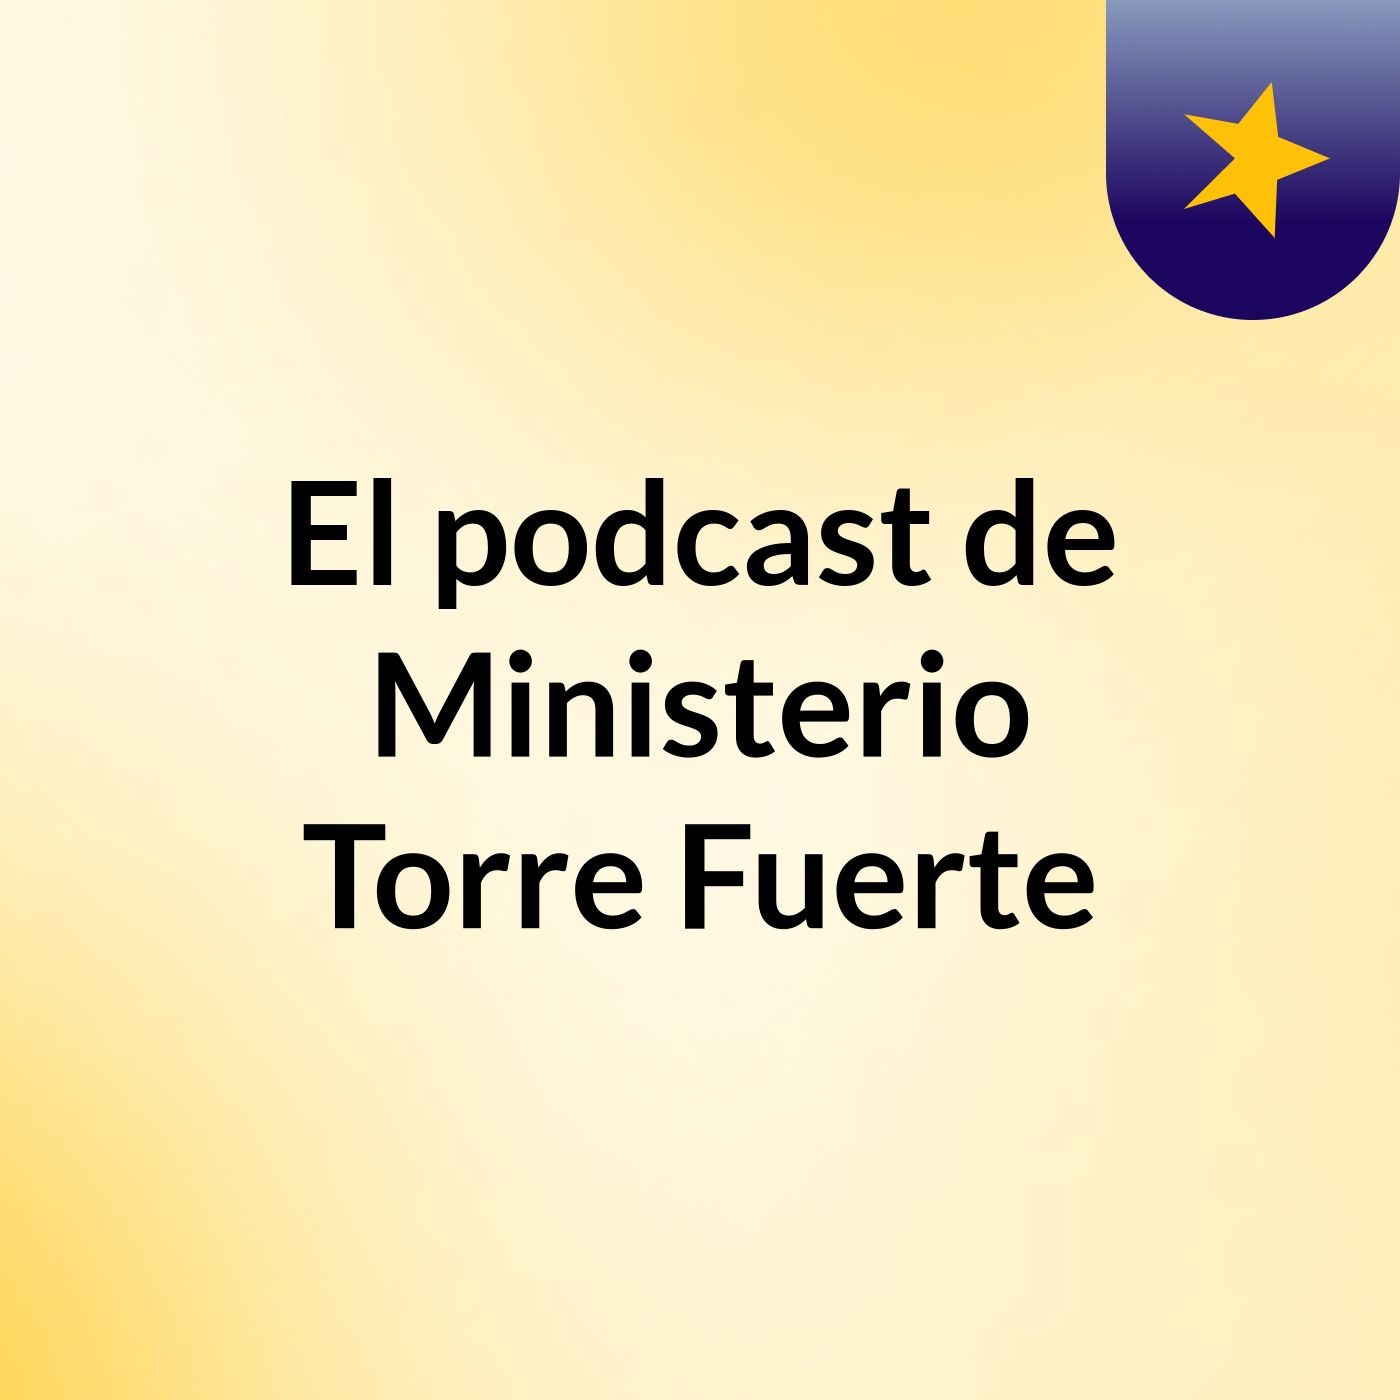 El podcast de Ministerio Torre Fuerte